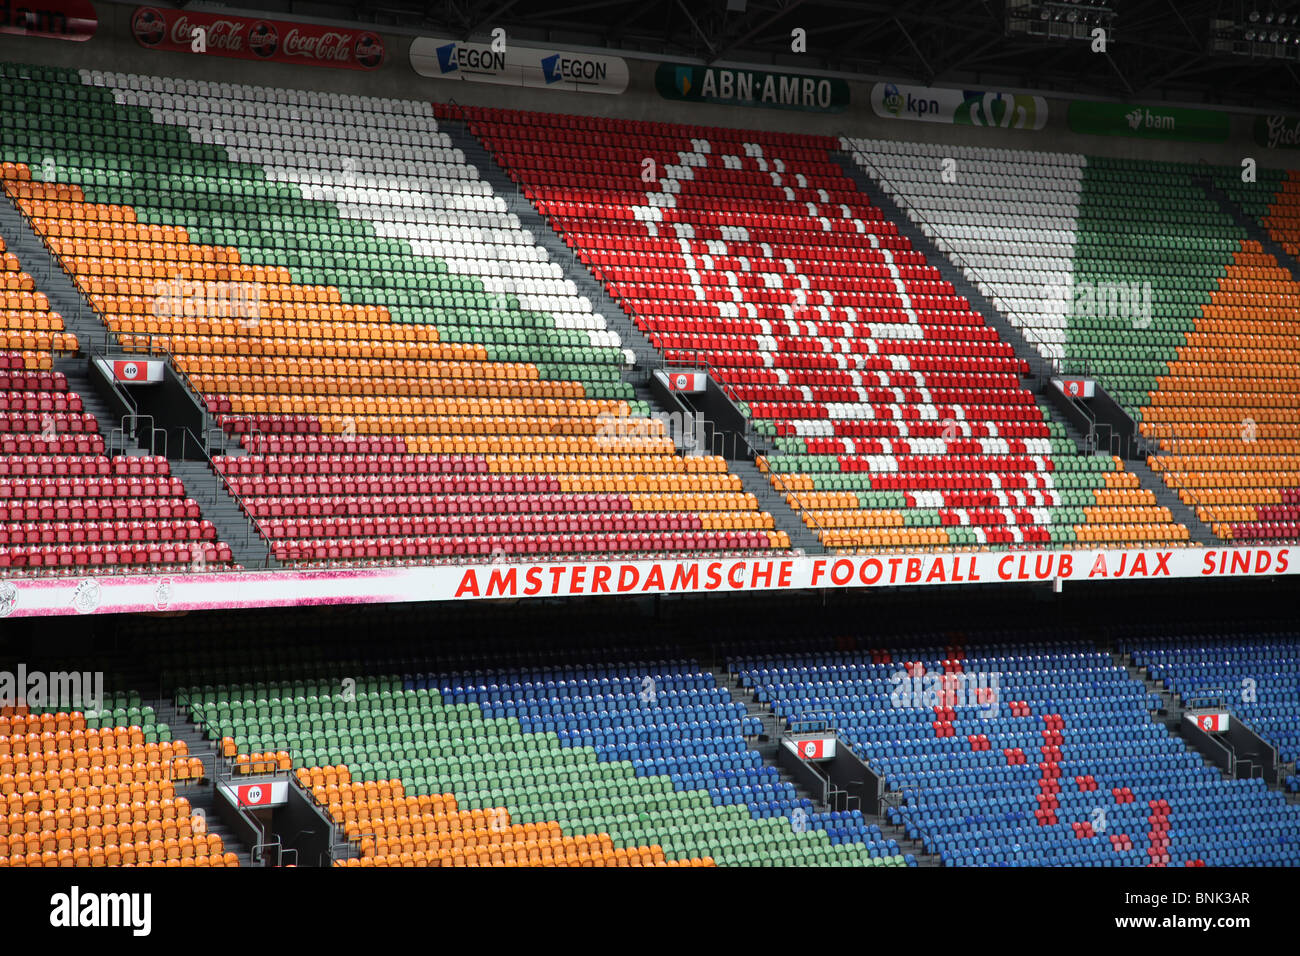 Seats in Ajax Arena Stadium, Amsterdam Stock Photo